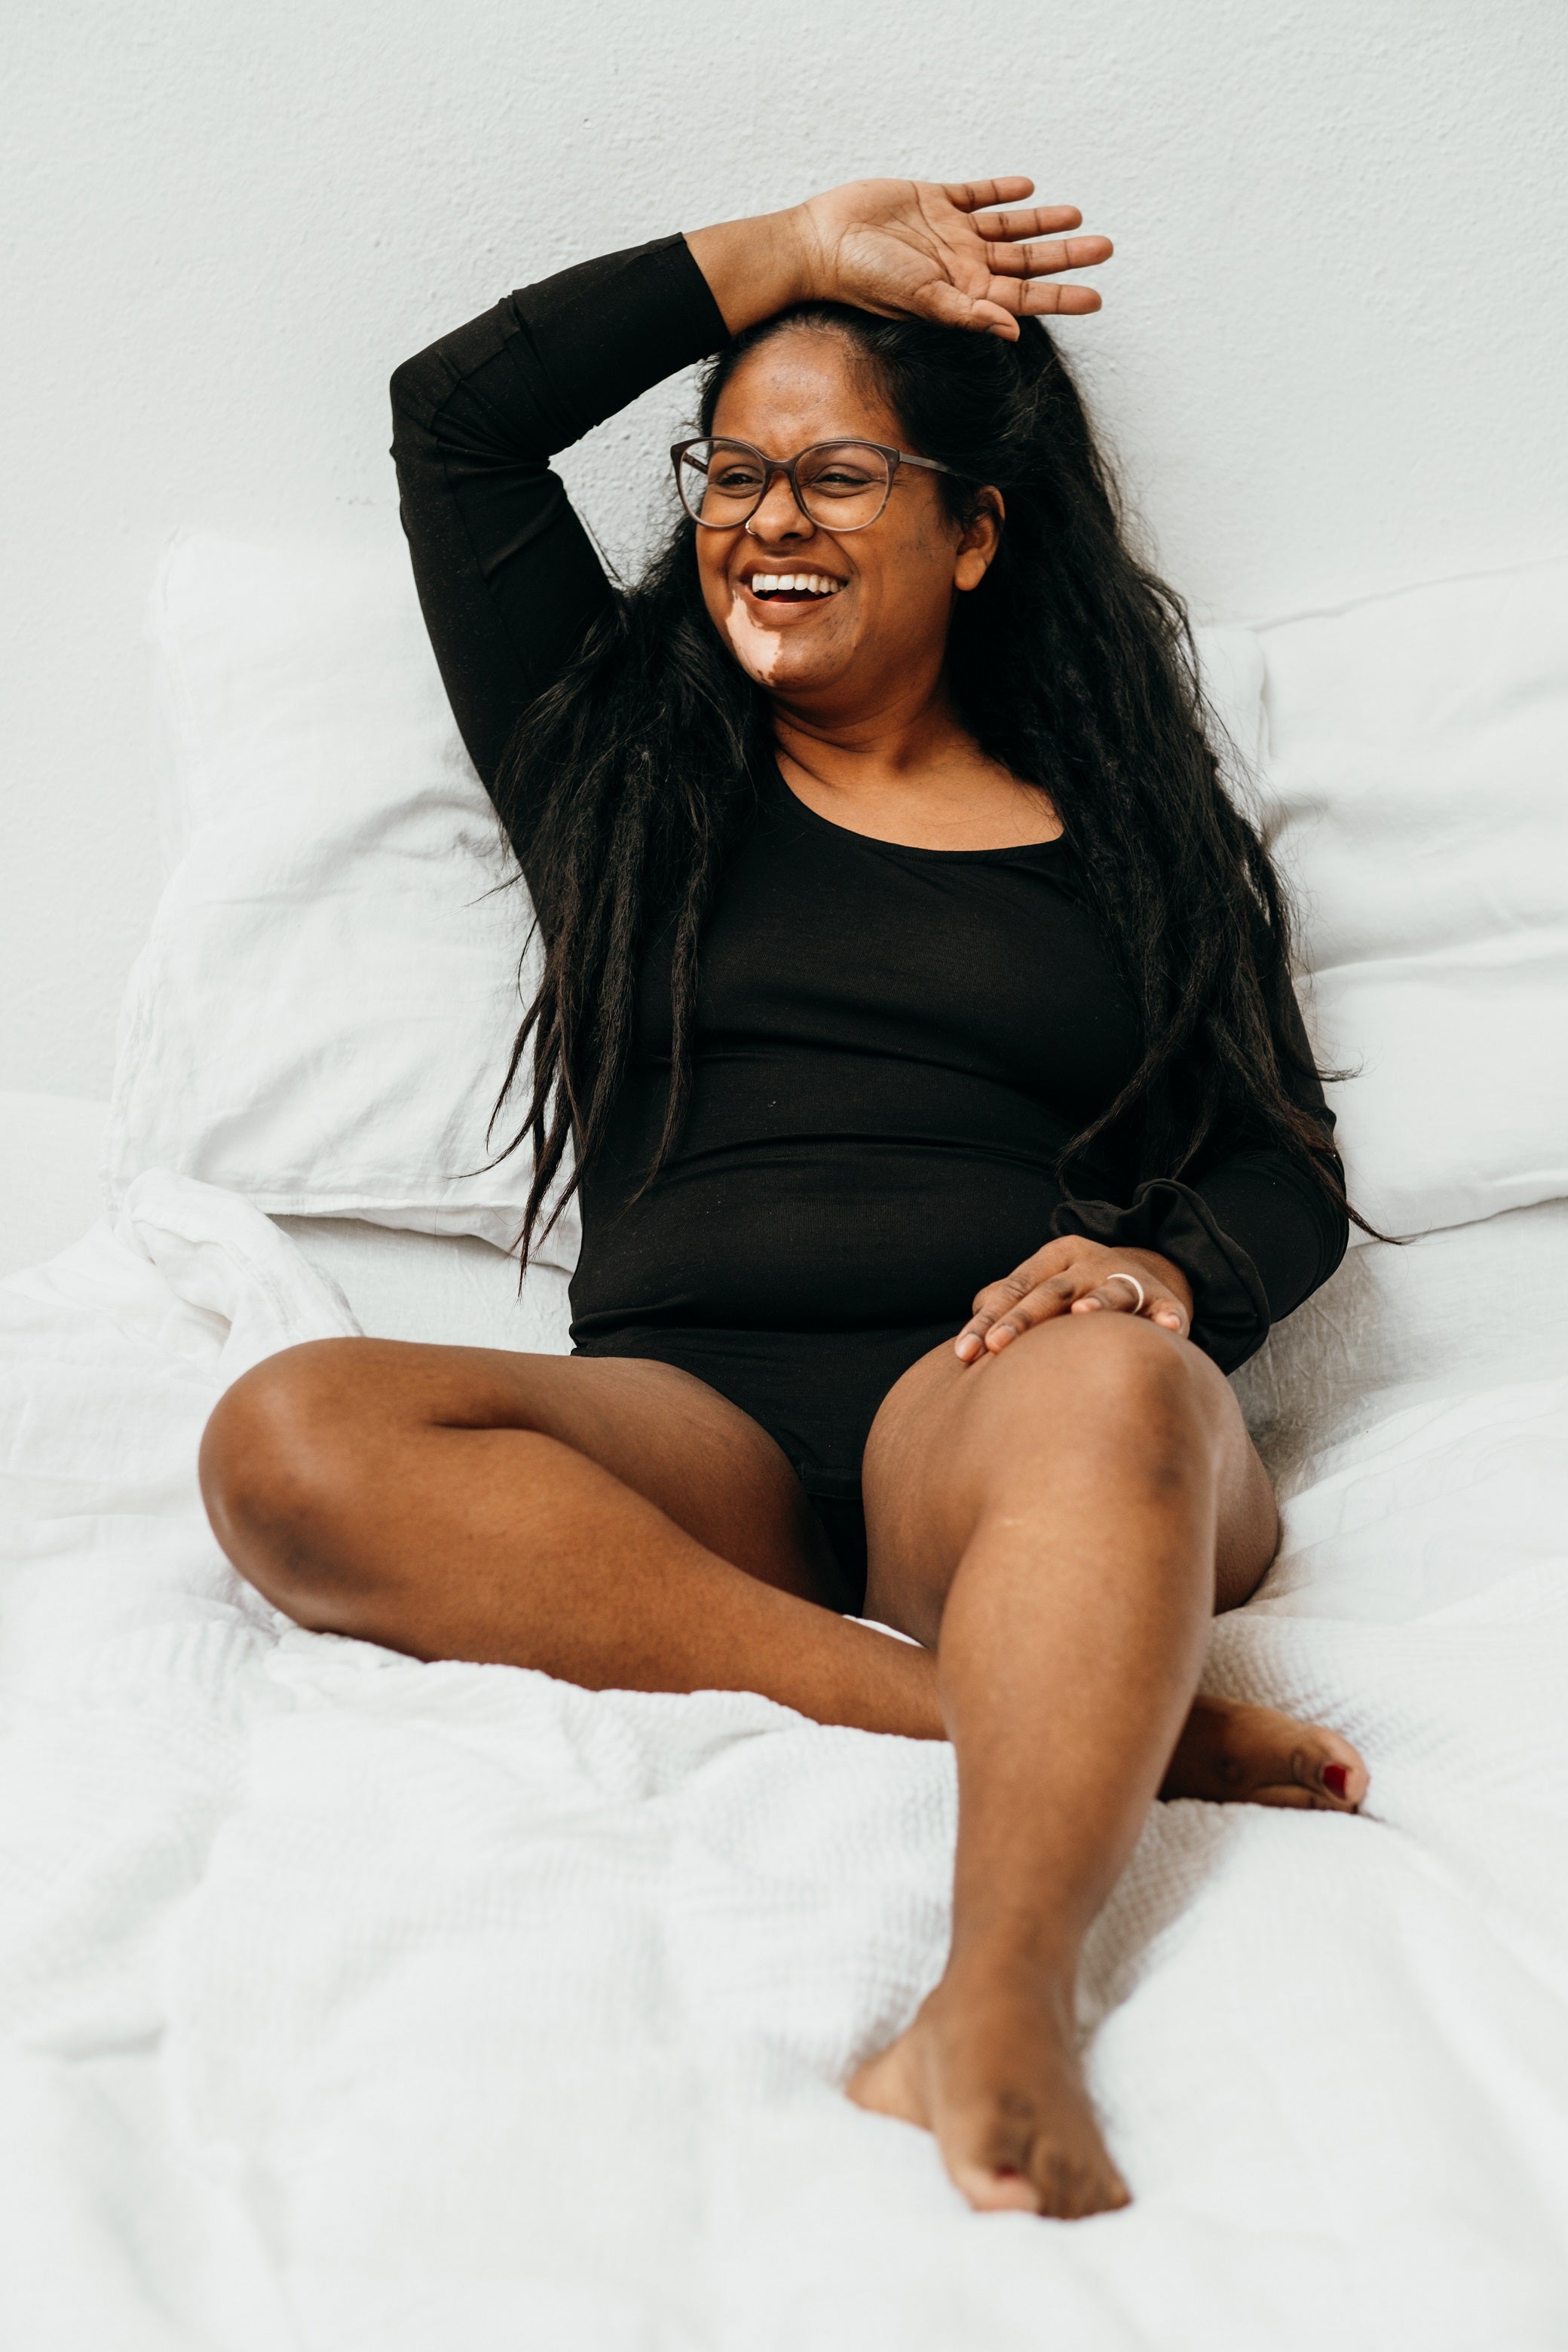 Model trägt schwarzen Langarmbody, sitzt an Wand gelehnt auf dem Bett und lacht.